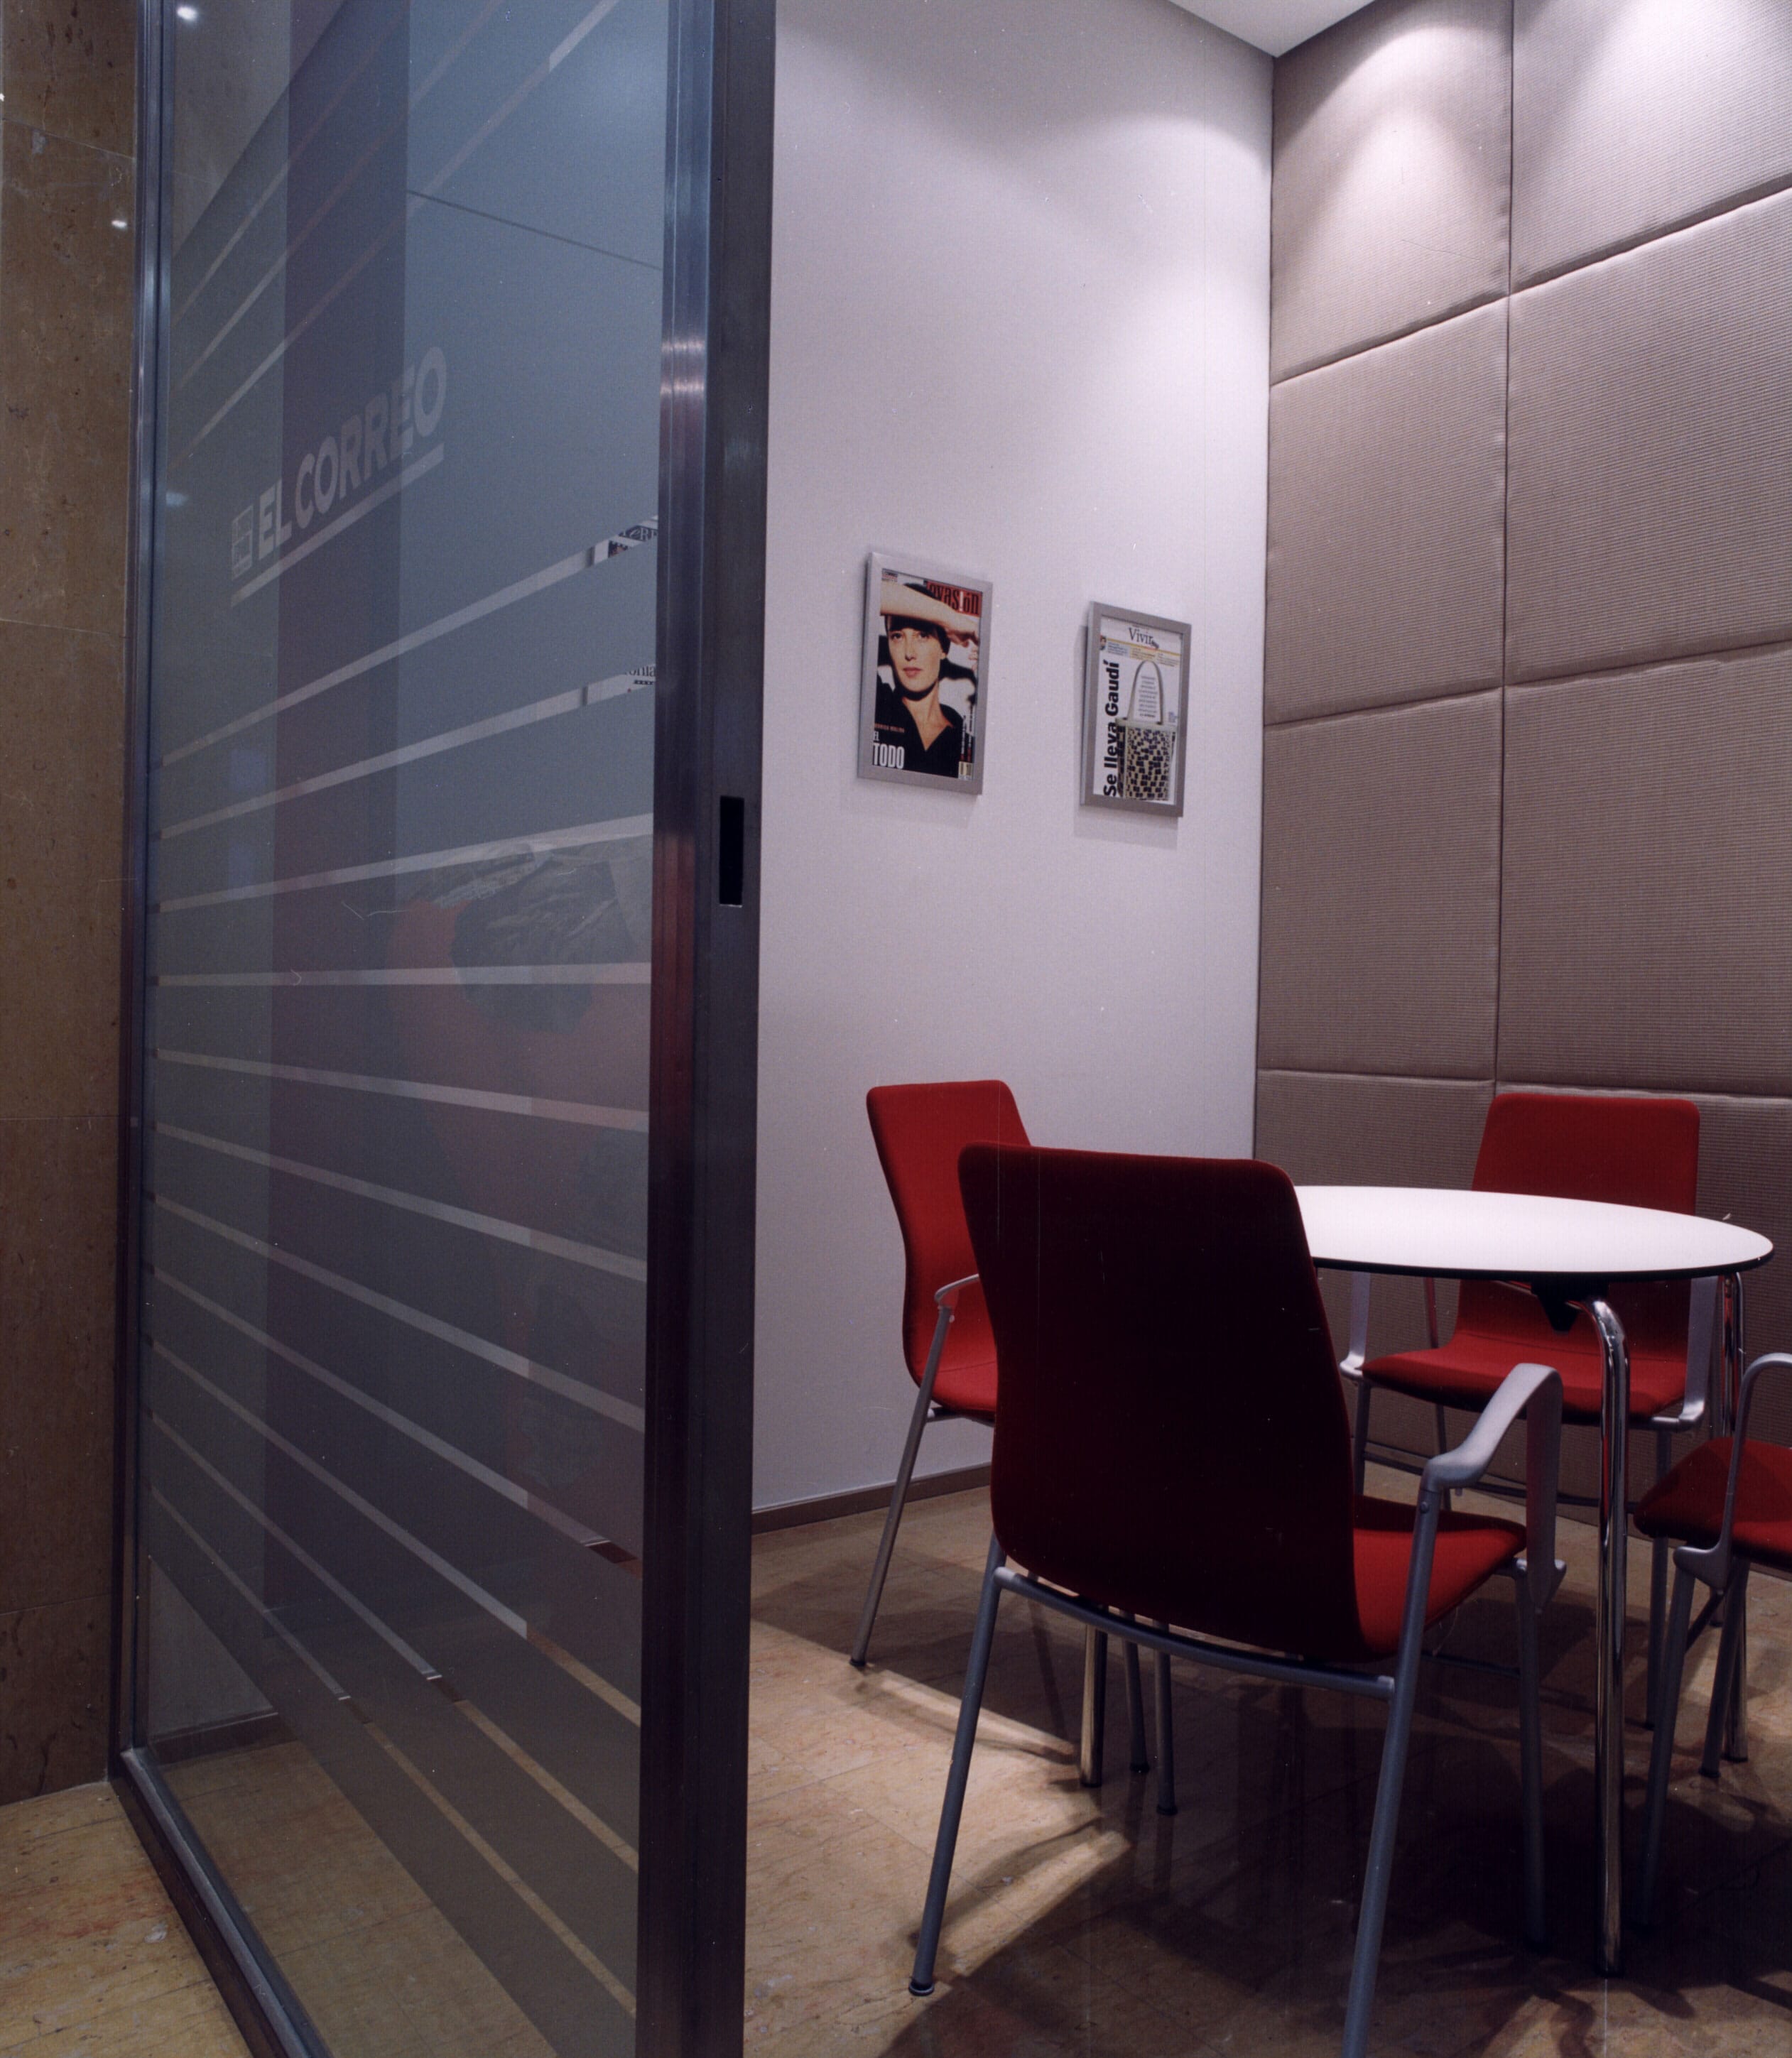 Proyecto de diseño interior para oficinas en Bilbao, por Begoña Susaeta